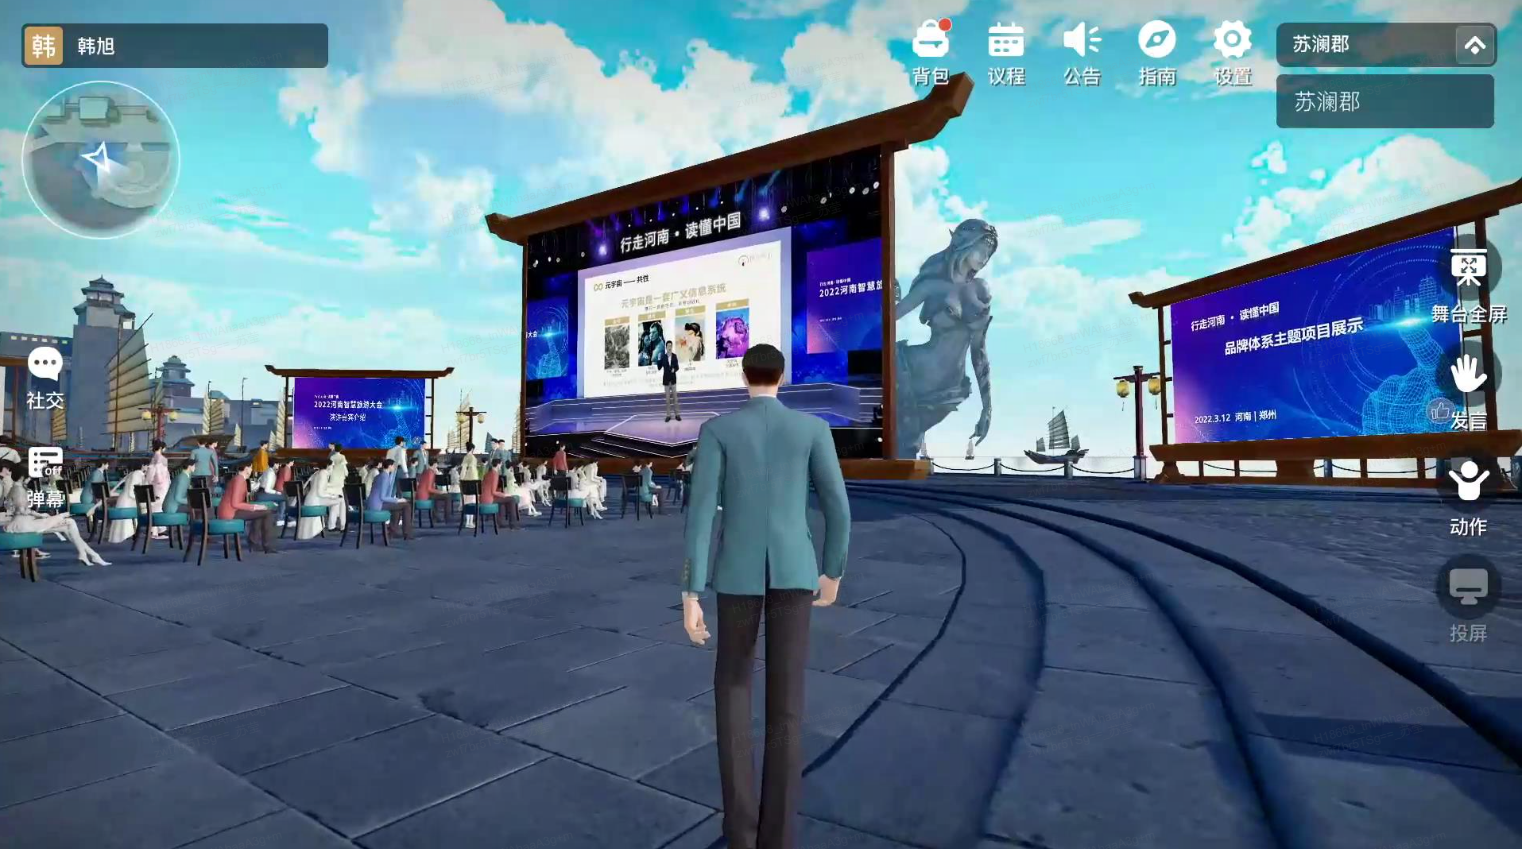 图片展示了一个虚拟现实游戏的场景，玩家视角中有舞台、屏幕和虚拟人物，背景是古风建筑和雕塑。